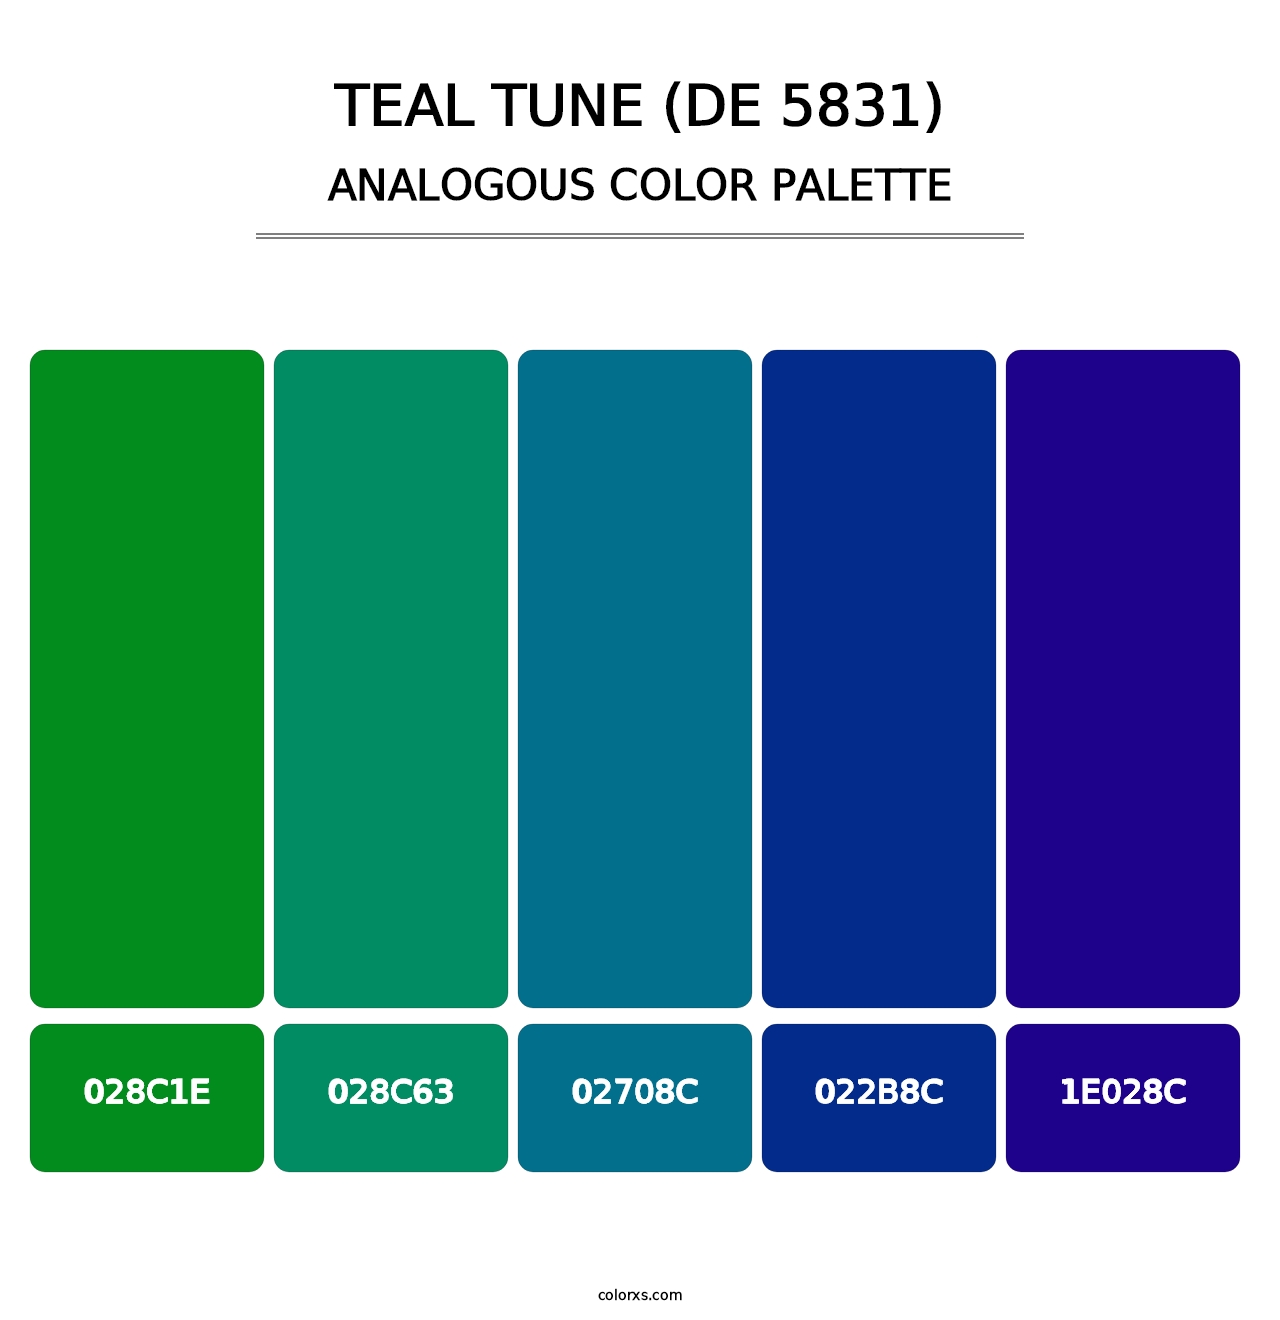 Teal Tune (DE 5831) - Analogous Color Palette